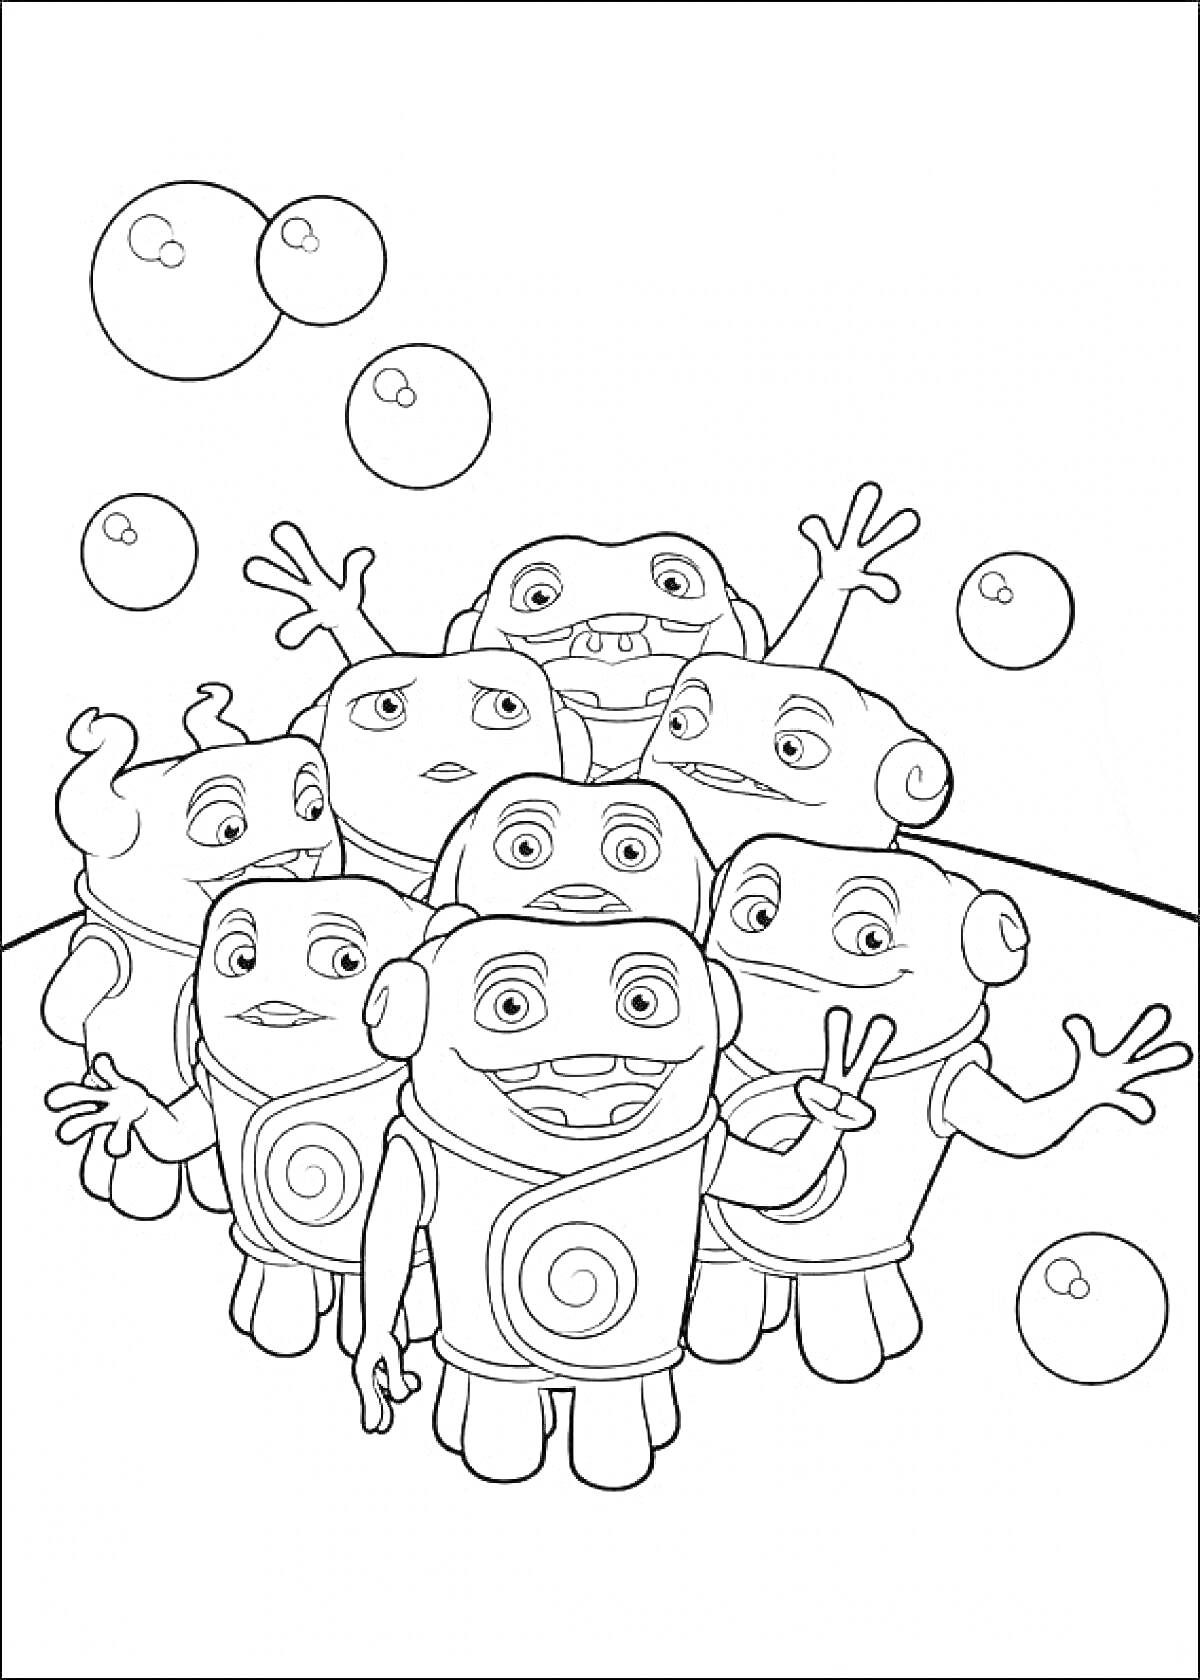 РаскраскаГруппа персонажей из мультфильма Дом с пузырями